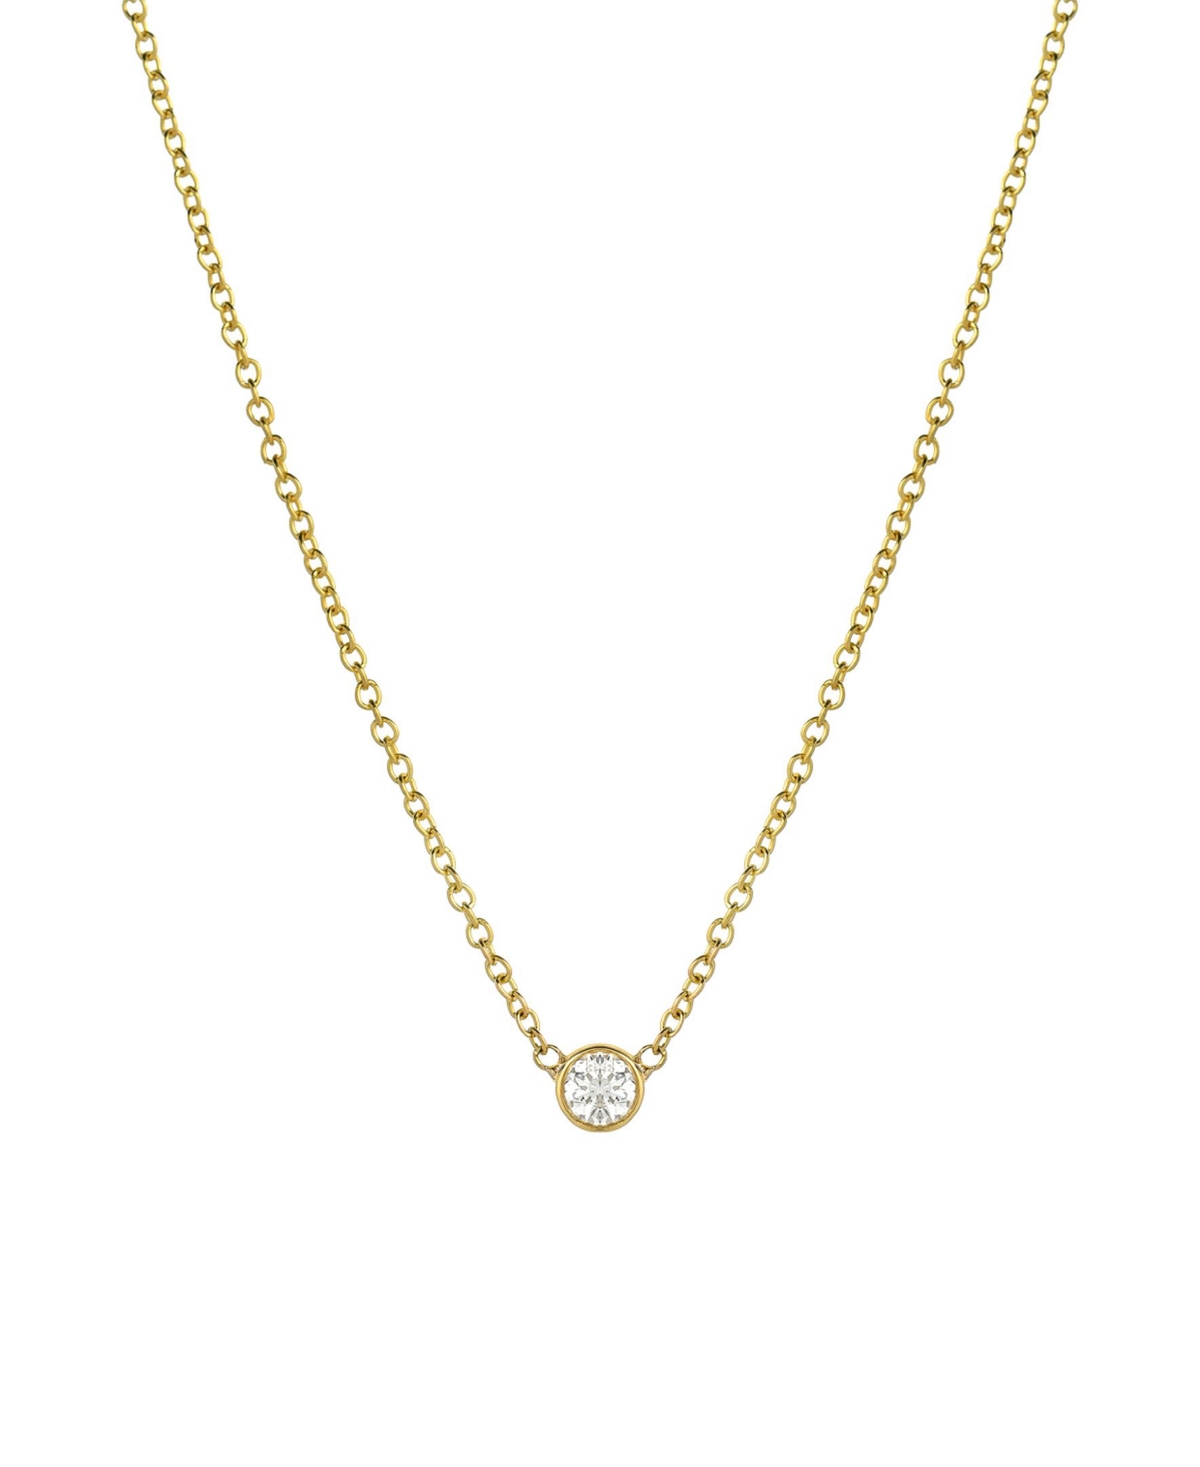 Small Bezel 14K Gold Diamond Necklace - Gold